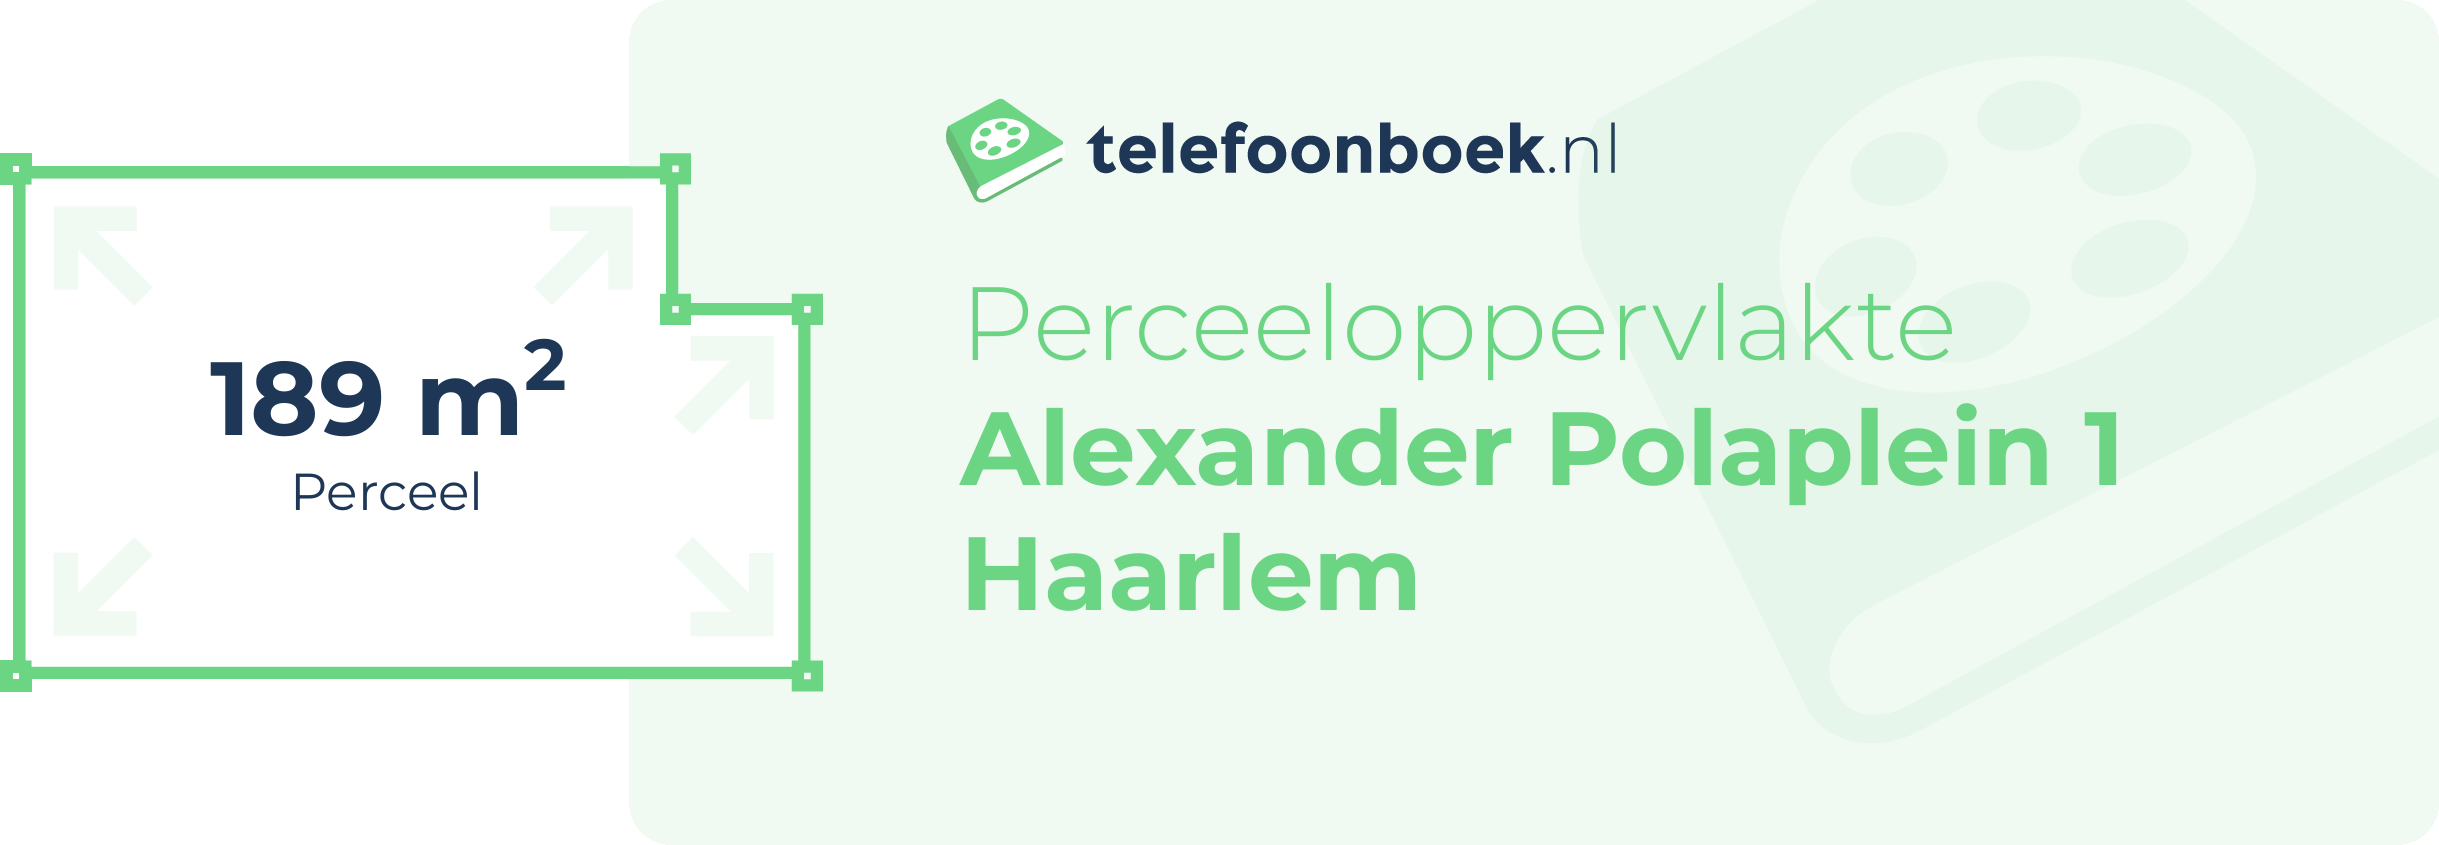 Perceeloppervlakte Alexander Polaplein 1 Haarlem